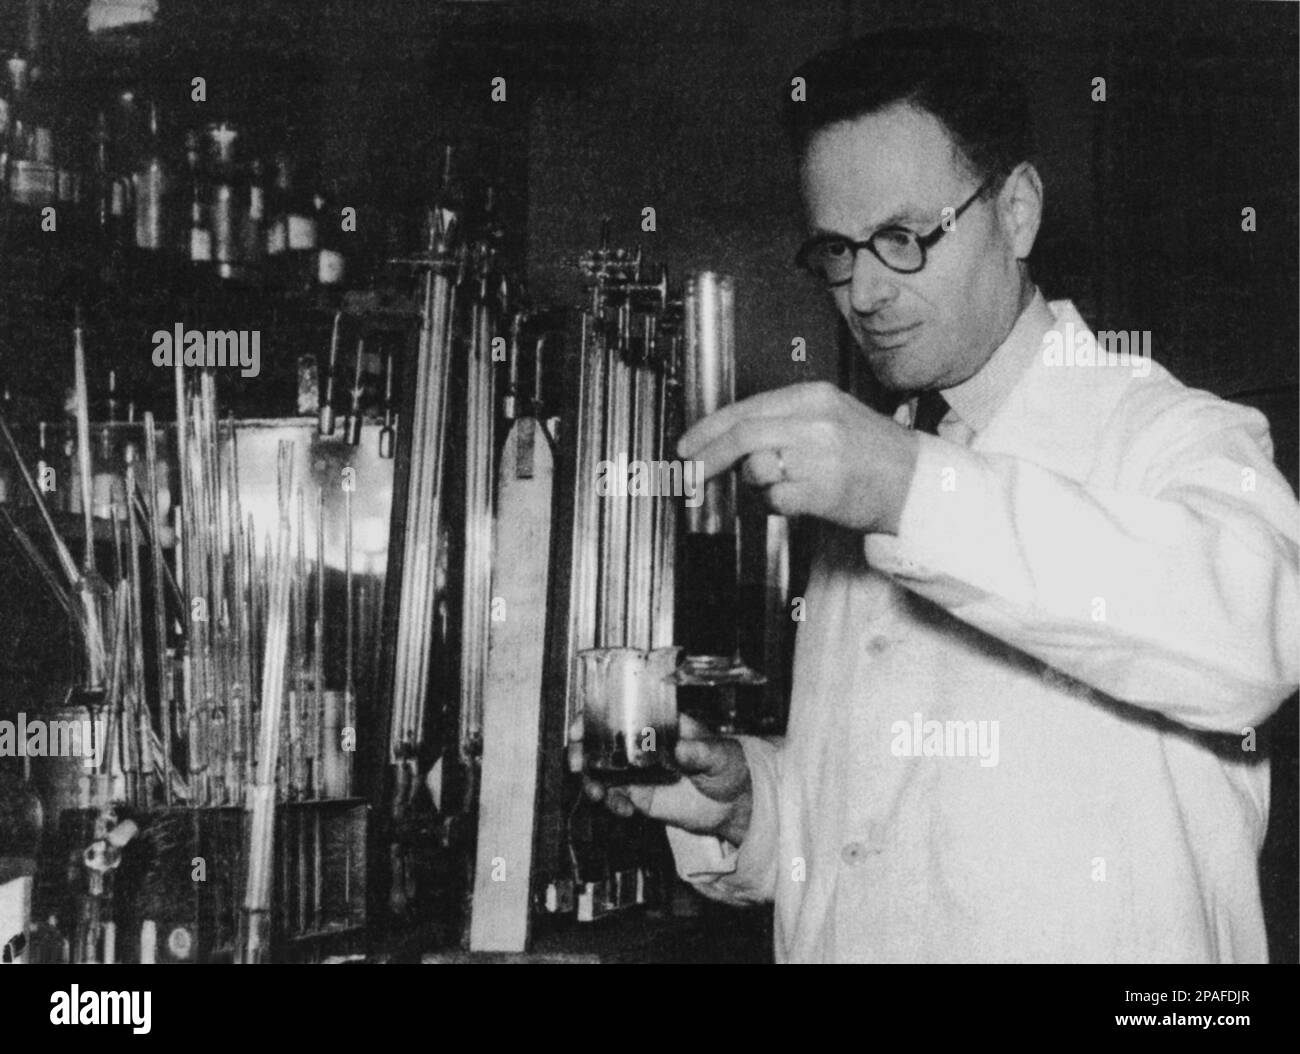 1950 Ca : der deutsche Biochimiker HANS ADOLF KREBS ( Hildesheim 1900 - Oxford 1981 ) erhielt 1953 den Nobelpreis für Medizin oder Phisiologie ( mit F.A. lipmann ) - foto storiche - foto storica - scienziato - Wissenschaftler - Portrait - ritratto - BIOCHIMICA - BIOCHIMICO - Occhiali - Linse - Brille - MEDICO - MEDICINA - Medizin - SCIENZA - WISSENSCHAFT - BIOLOGE - BIOLOGO - BIOLOGIA - PREMIO NOBEL --- ARCHIVIO GBB Stockfoto